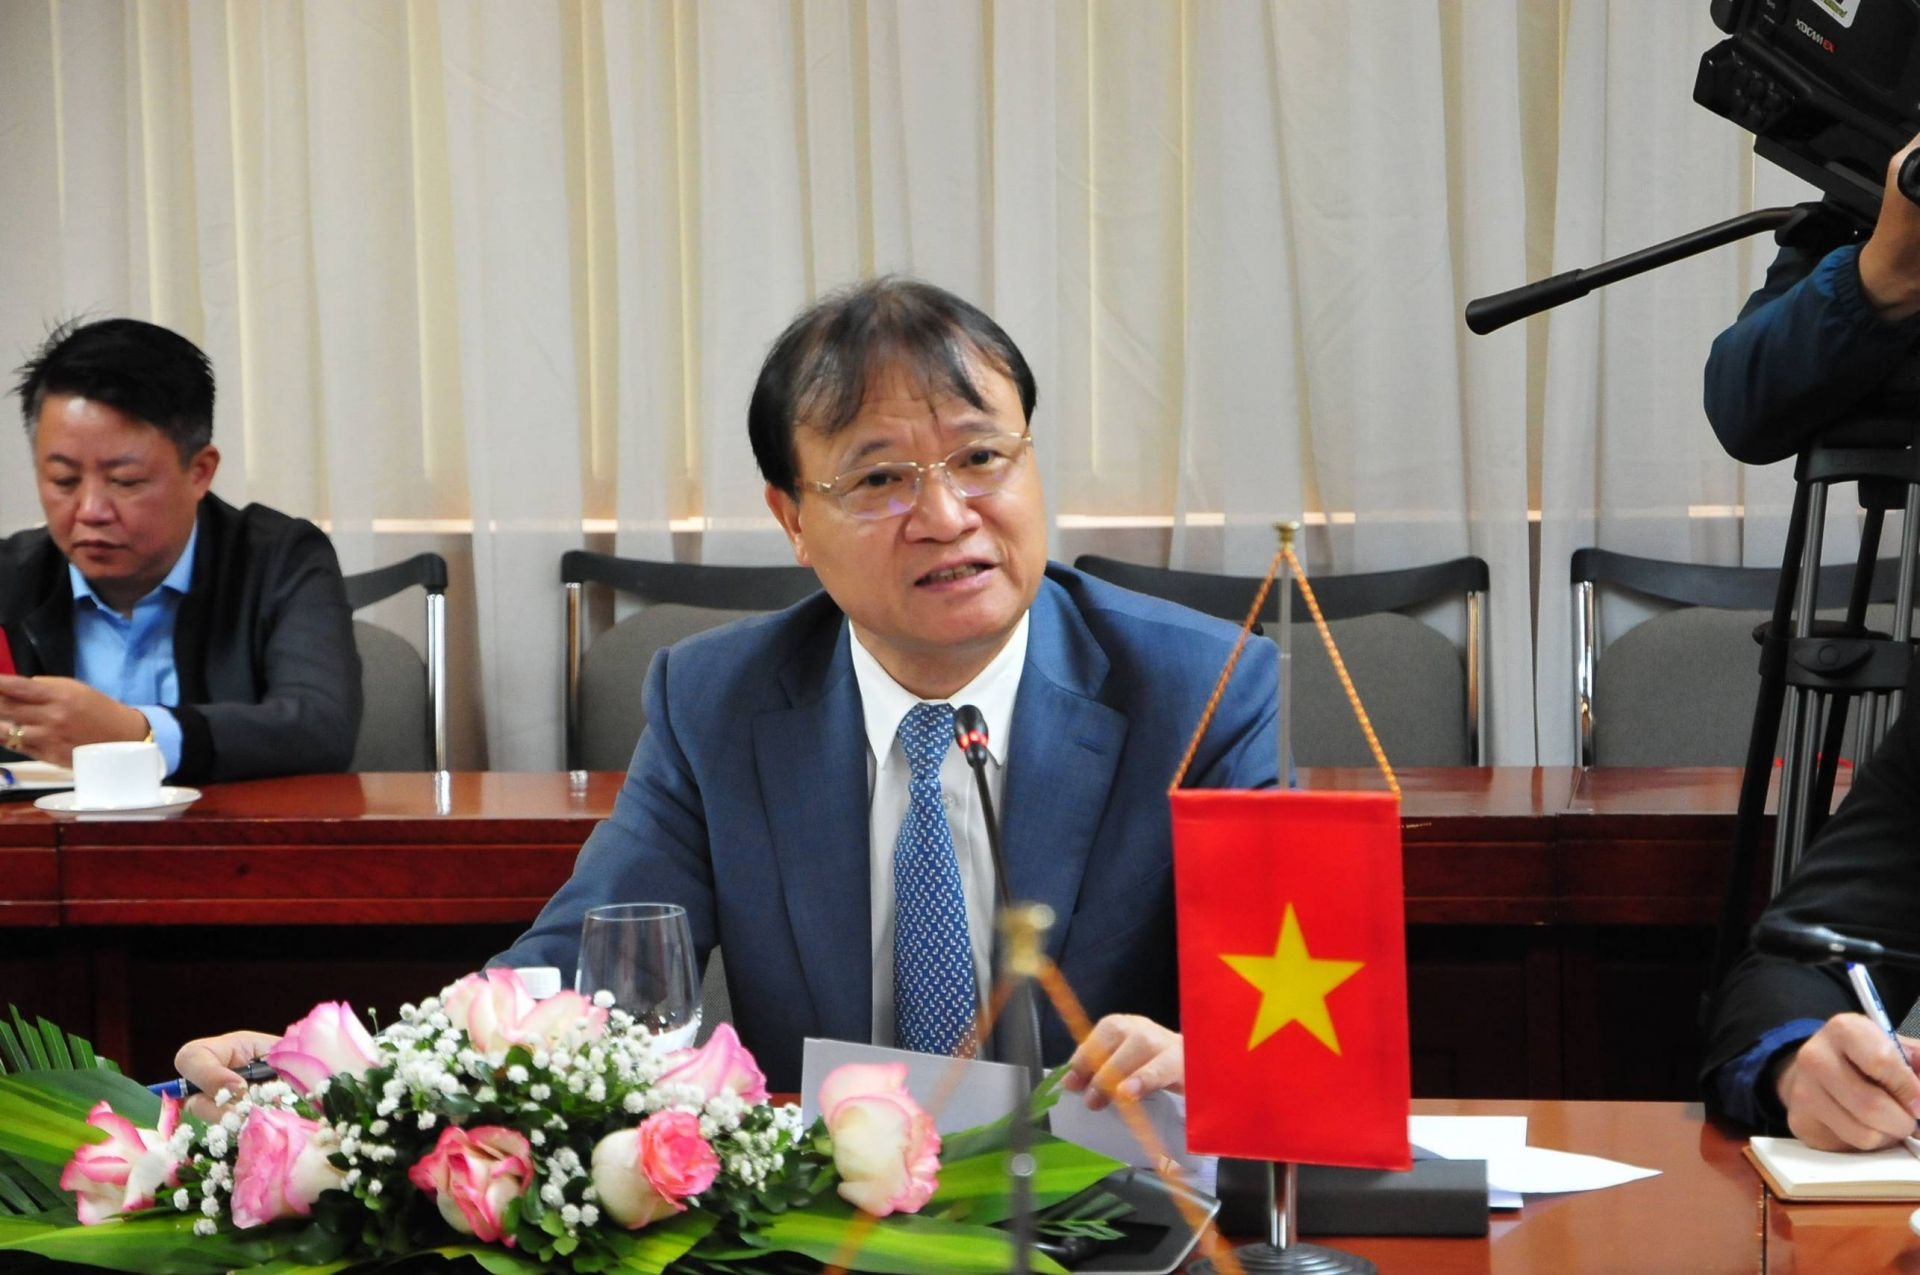 越南工贸部副部长杜胜海在会上发表讲话。